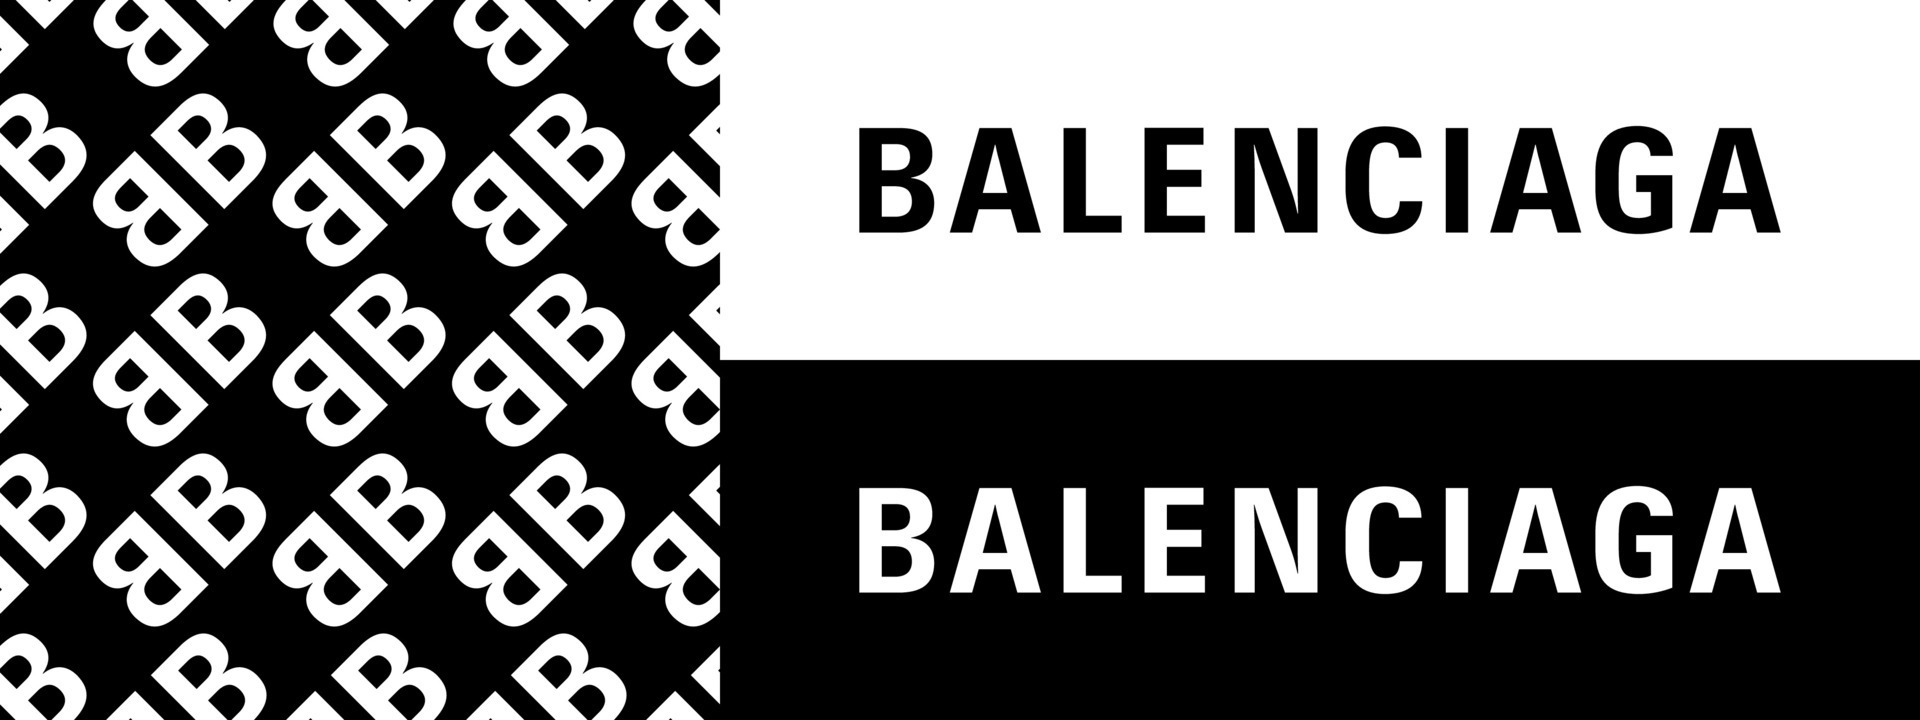 balenciaga vector logo icons and pattern. Editorial use. Vinnitsa ...